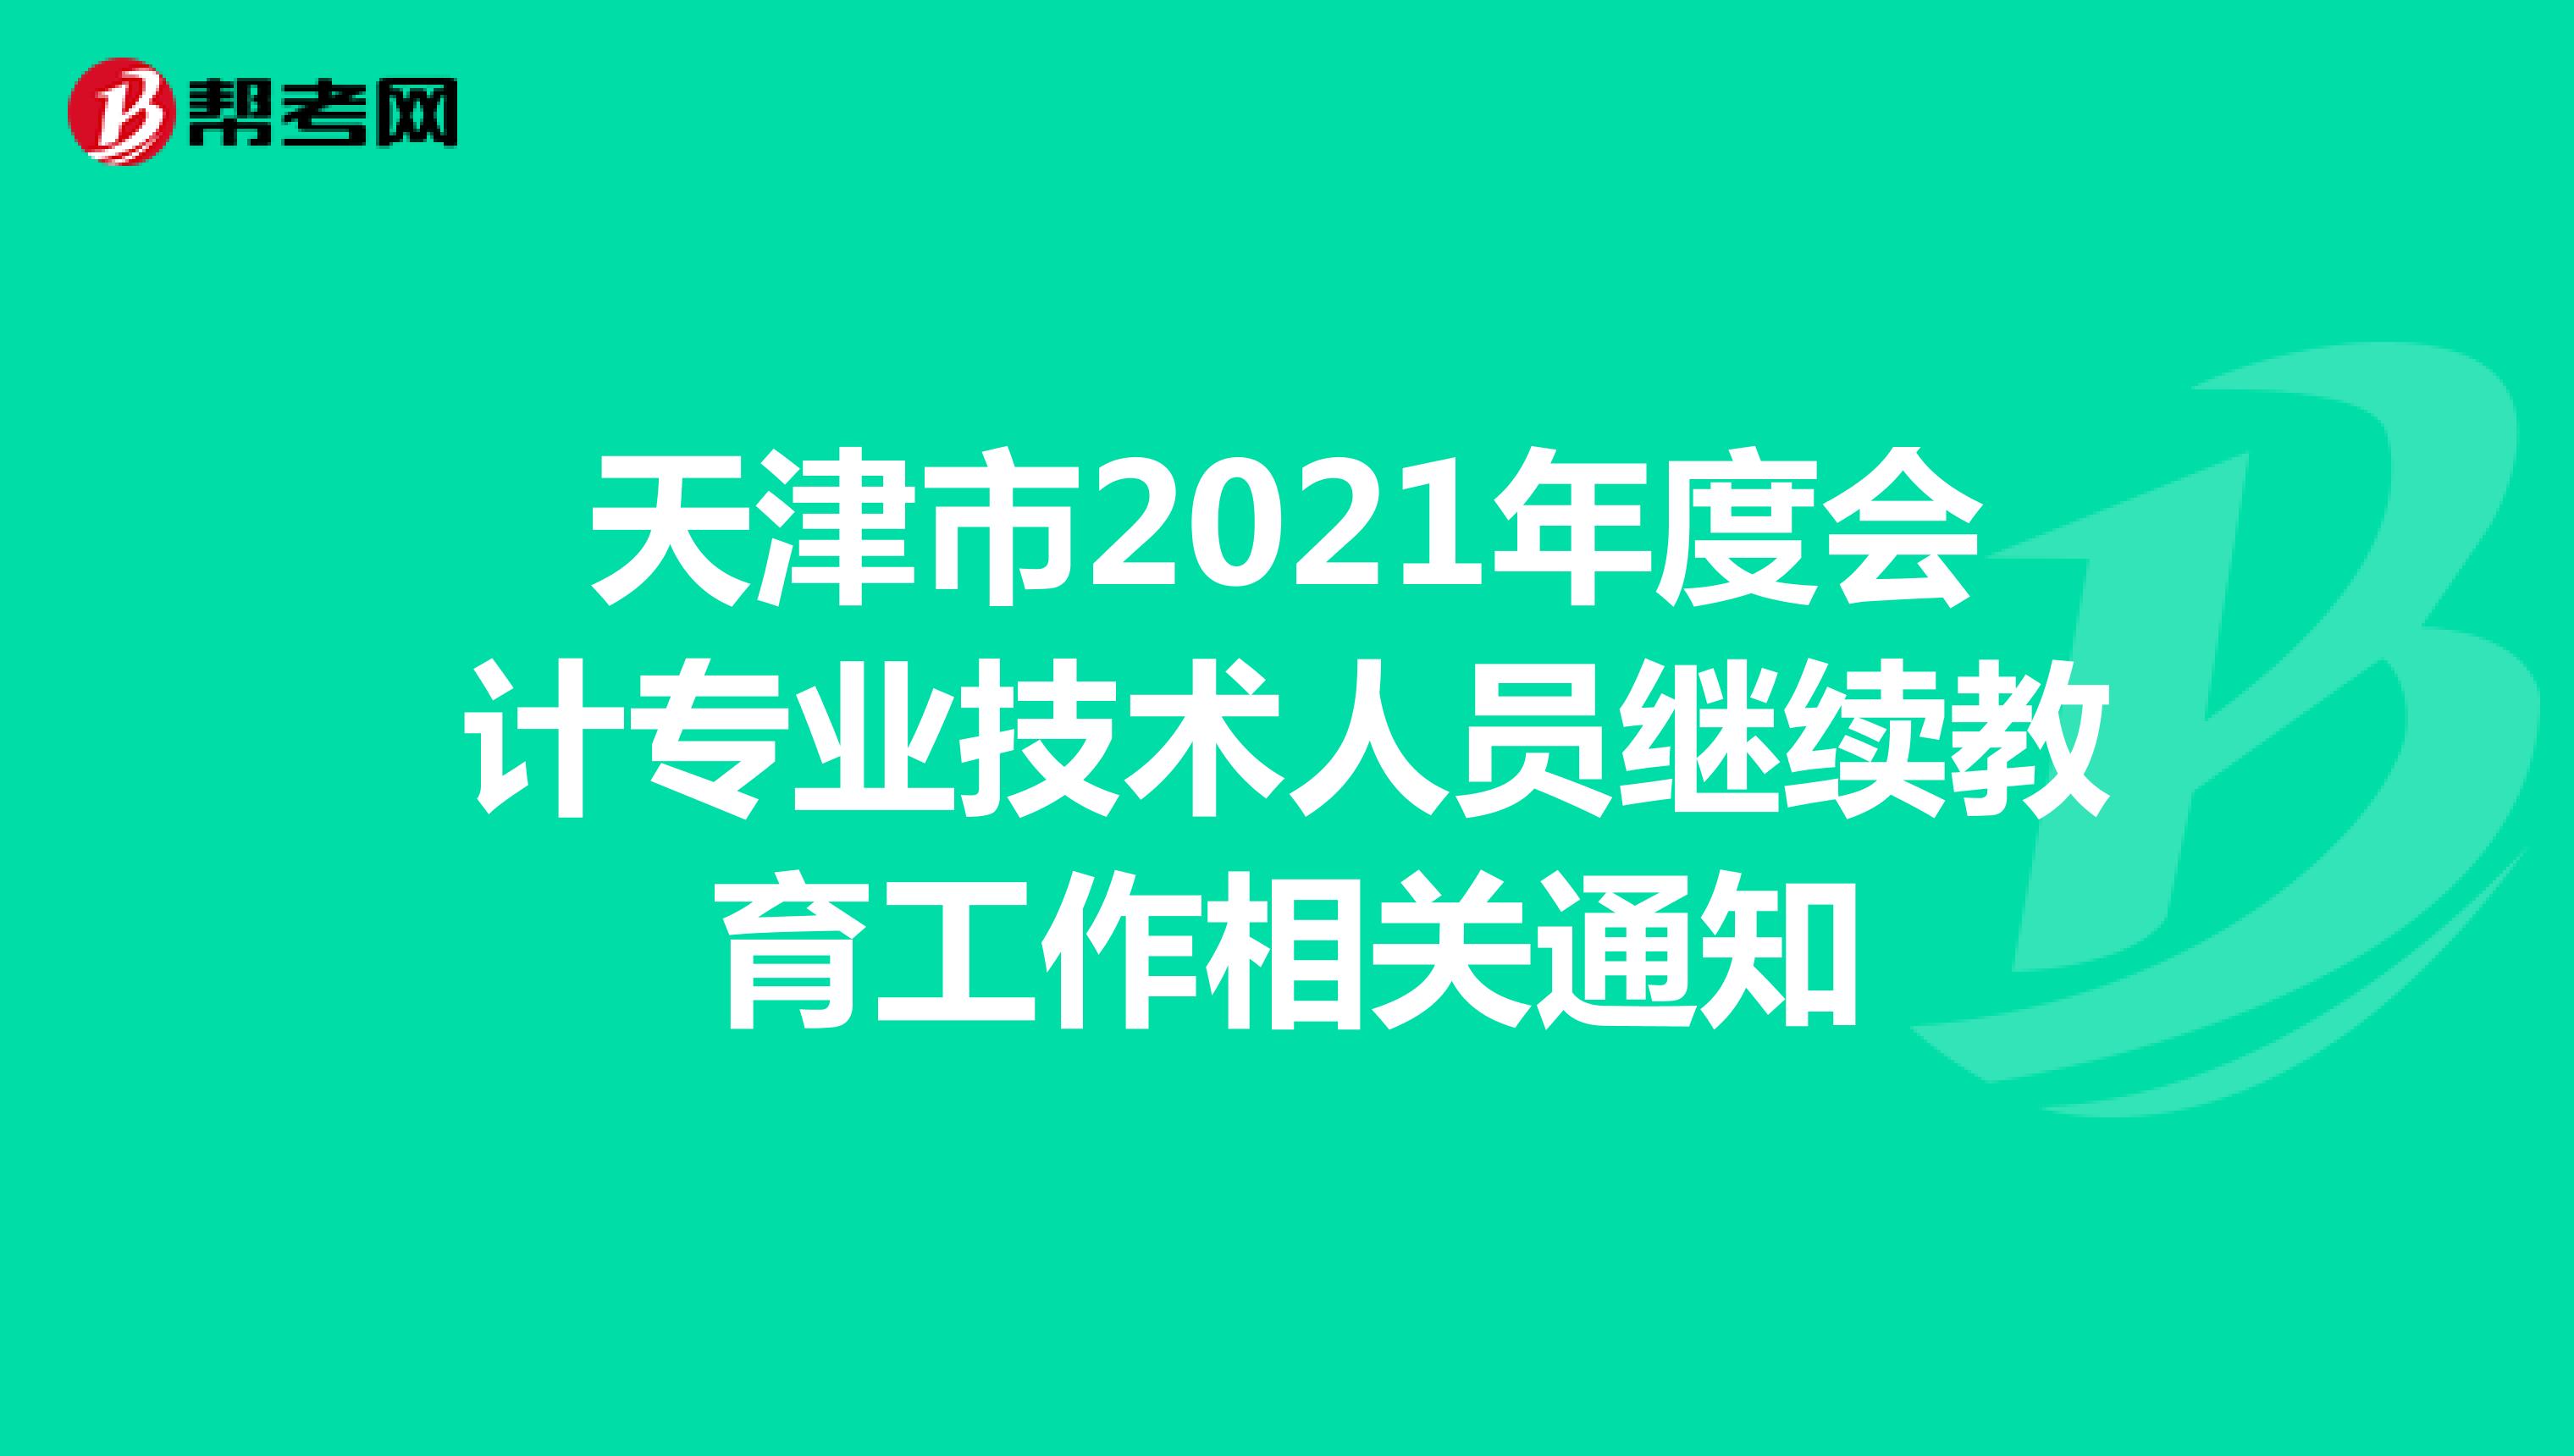 天津市2021年度会计专业技术人员继续教育工作相关通知